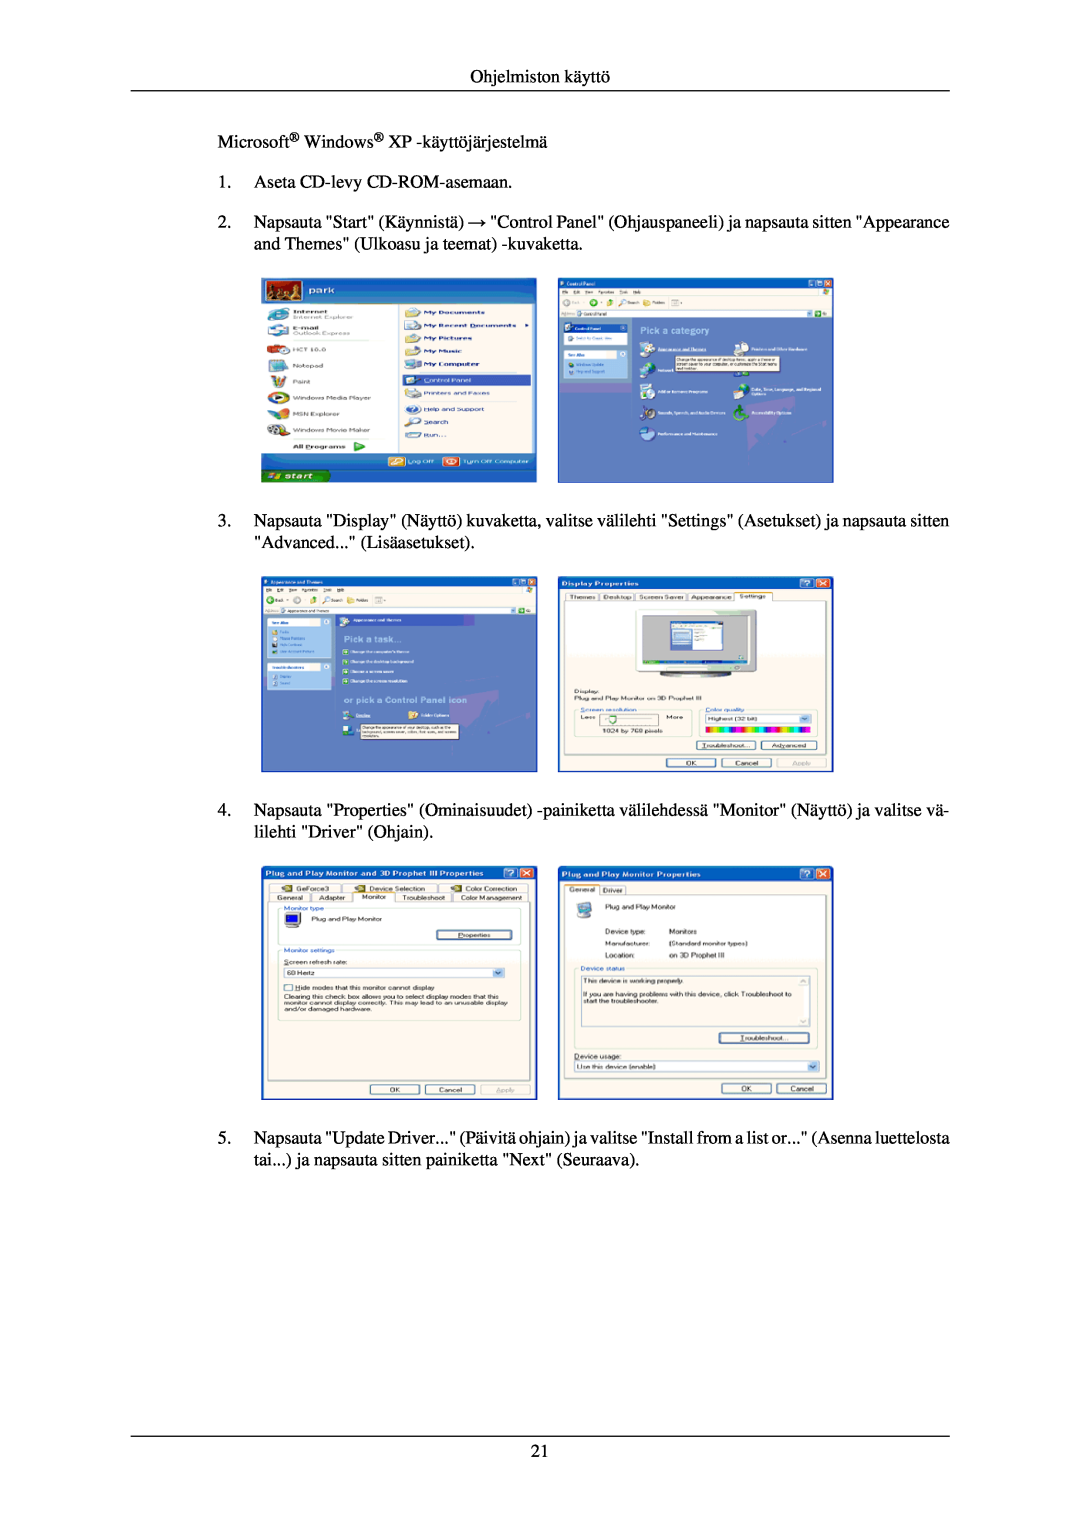 Samsung LS24CMKKFV/EN manual Ohjelmiston käyttö Microsoft Windows XP -käyttöjärjestelmä, Aseta CD-levy CD-ROM-asemaan 